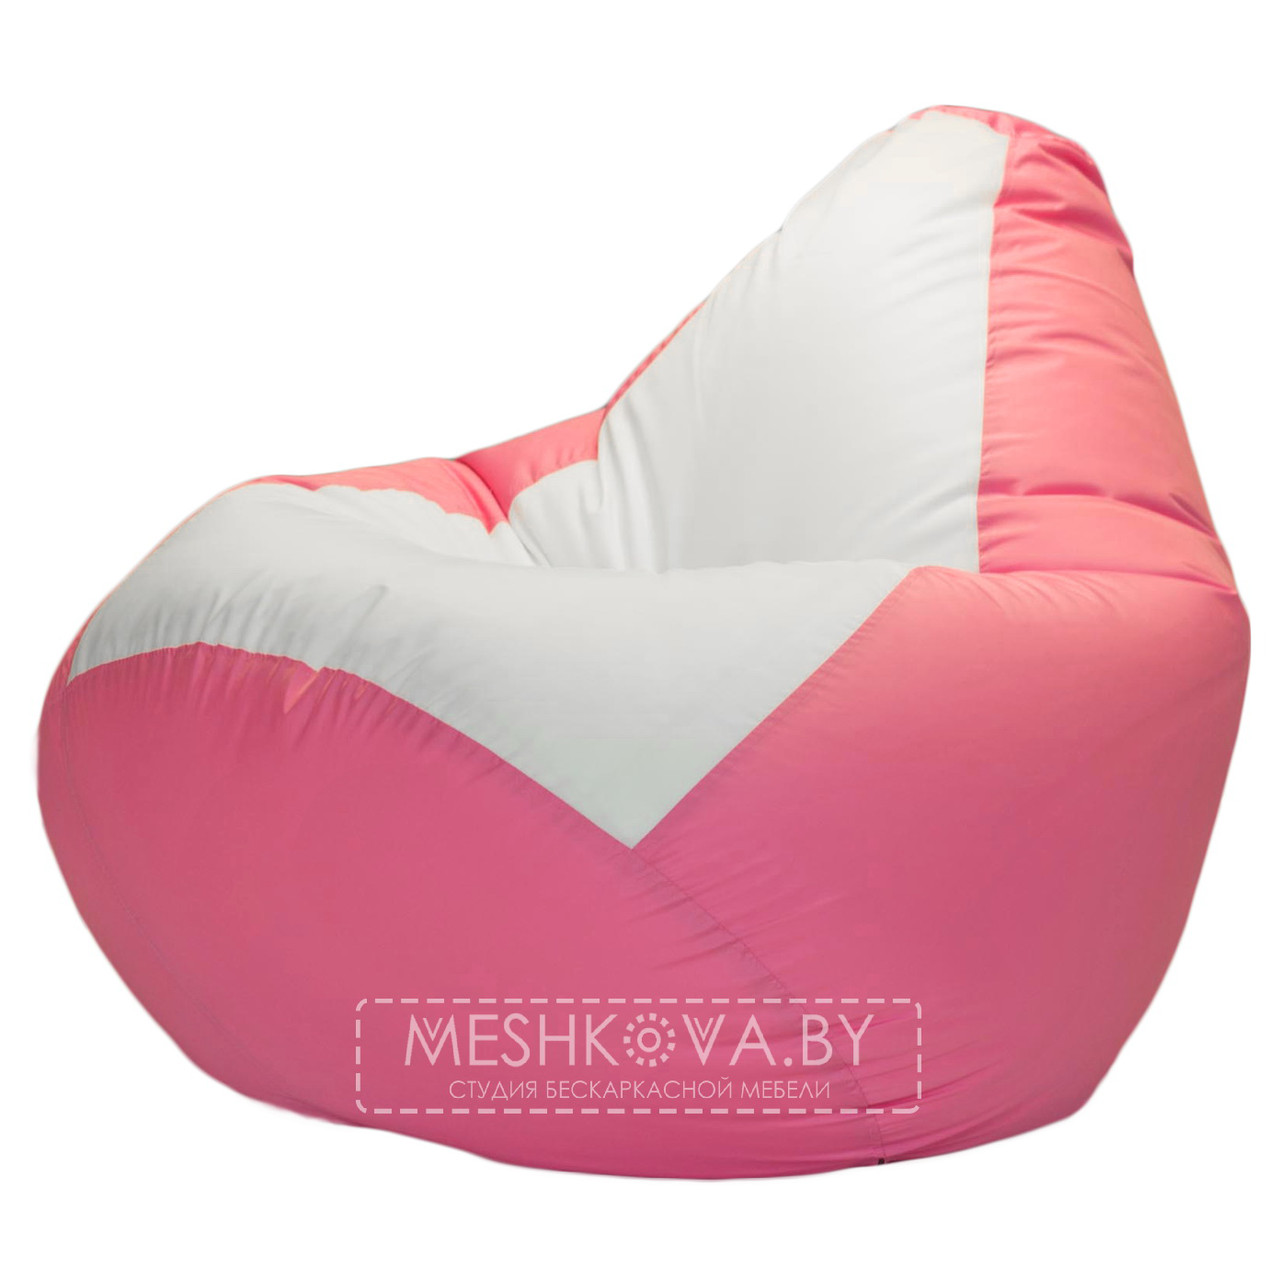 Кресло-груша Фламинго - M, фото 1